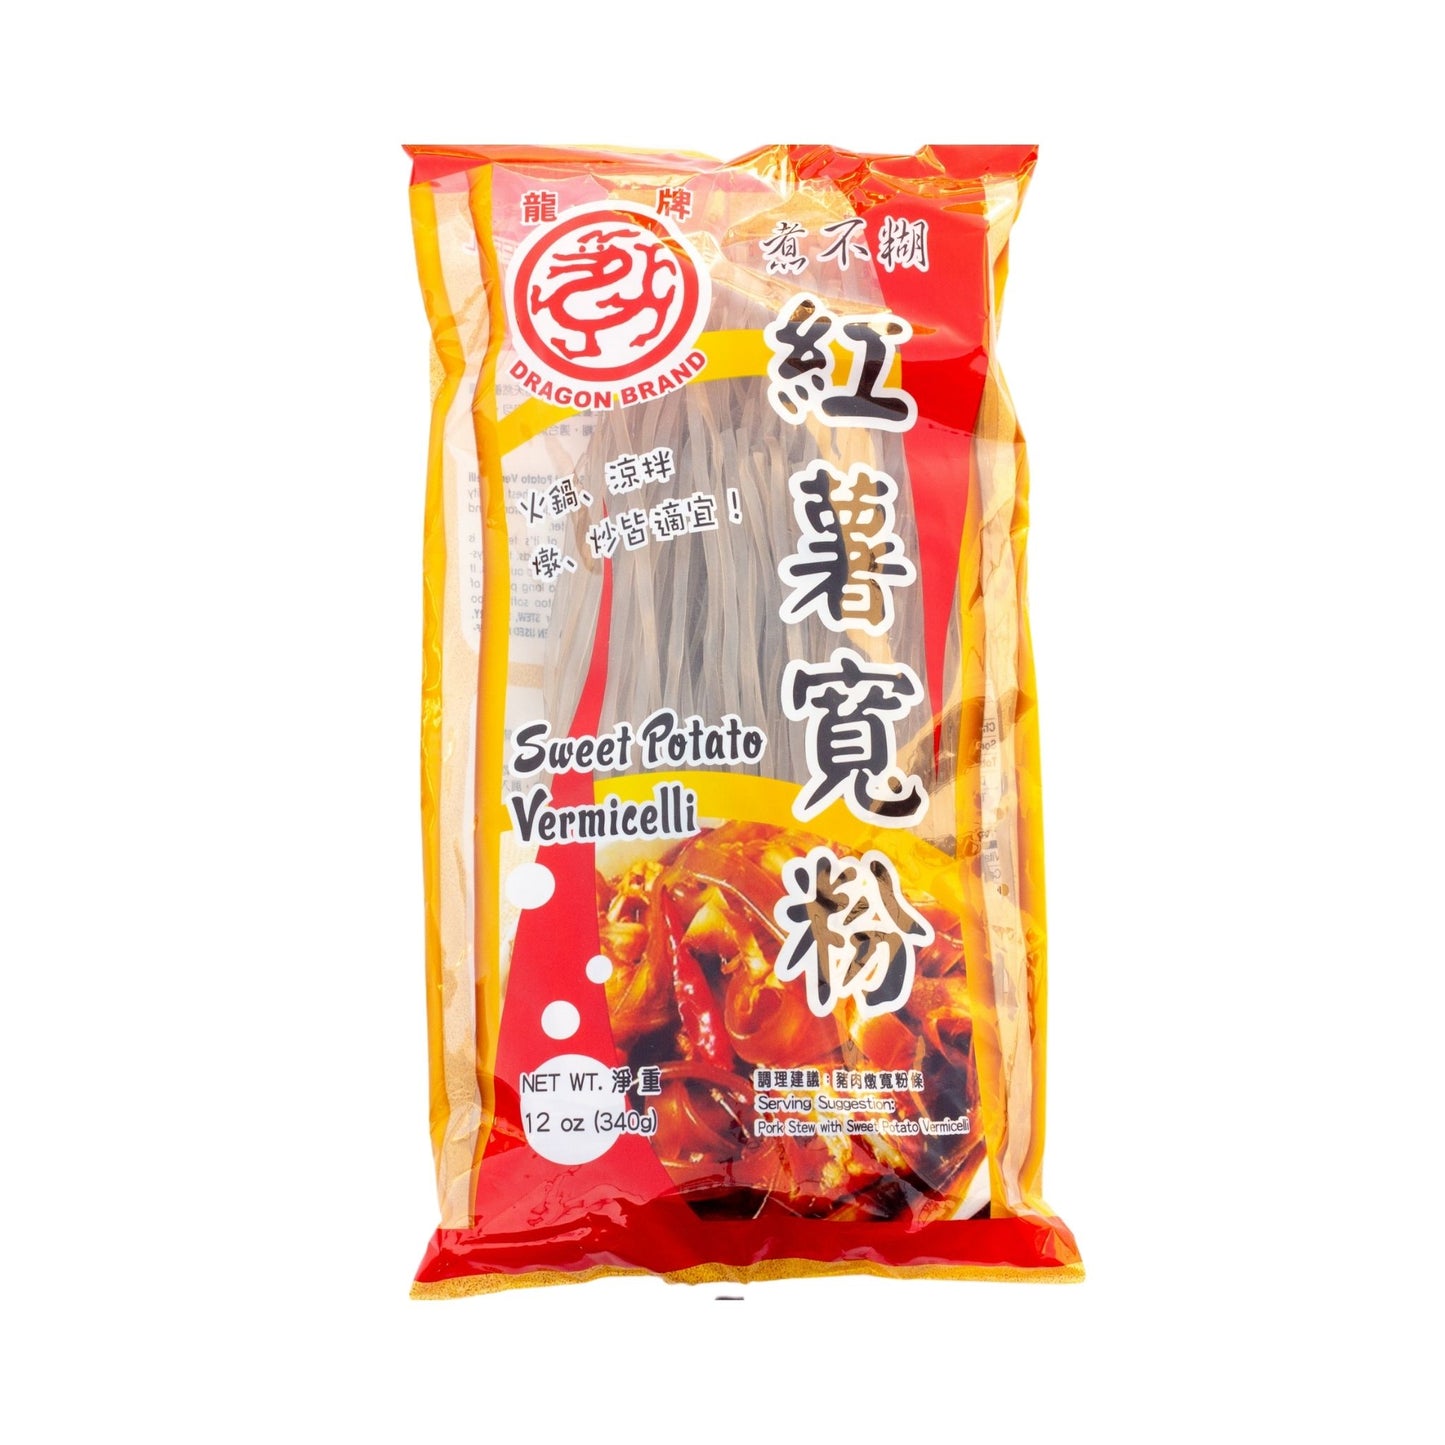 Sweet Potato Vermicelli 红薯寛粉 (12 OZ)